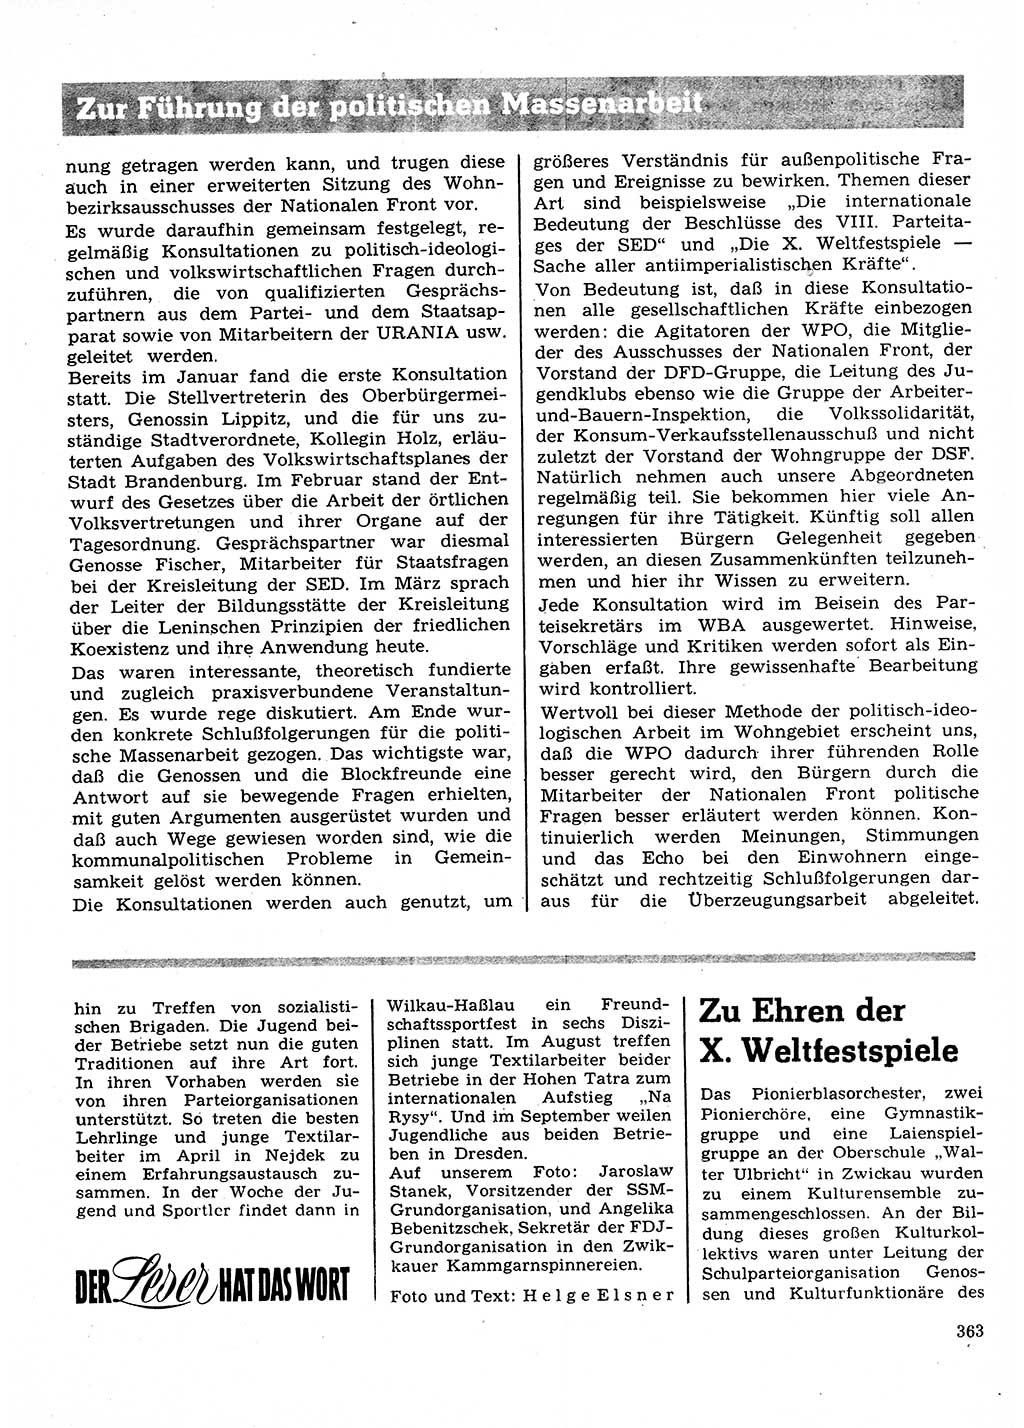 Neuer Weg (NW), Organ des Zentralkomitees (ZK) der SED (Sozialistische Einheitspartei Deutschlands) für Fragen des Parteilebens, 28. Jahrgang [Deutsche Demokratische Republik (DDR)] 1973, Seite 363 (NW ZK SED DDR 1973, S. 363)